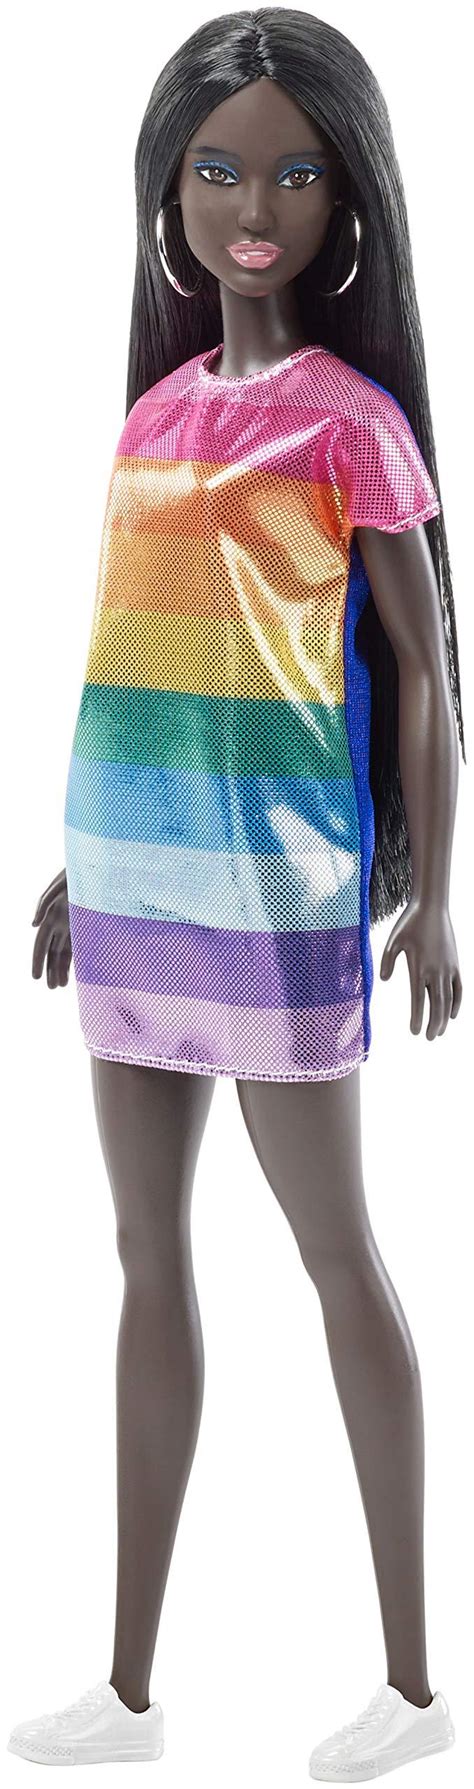 Barbie Fashionistas Rainbow Sparkle Doll 887961535006 Ebay